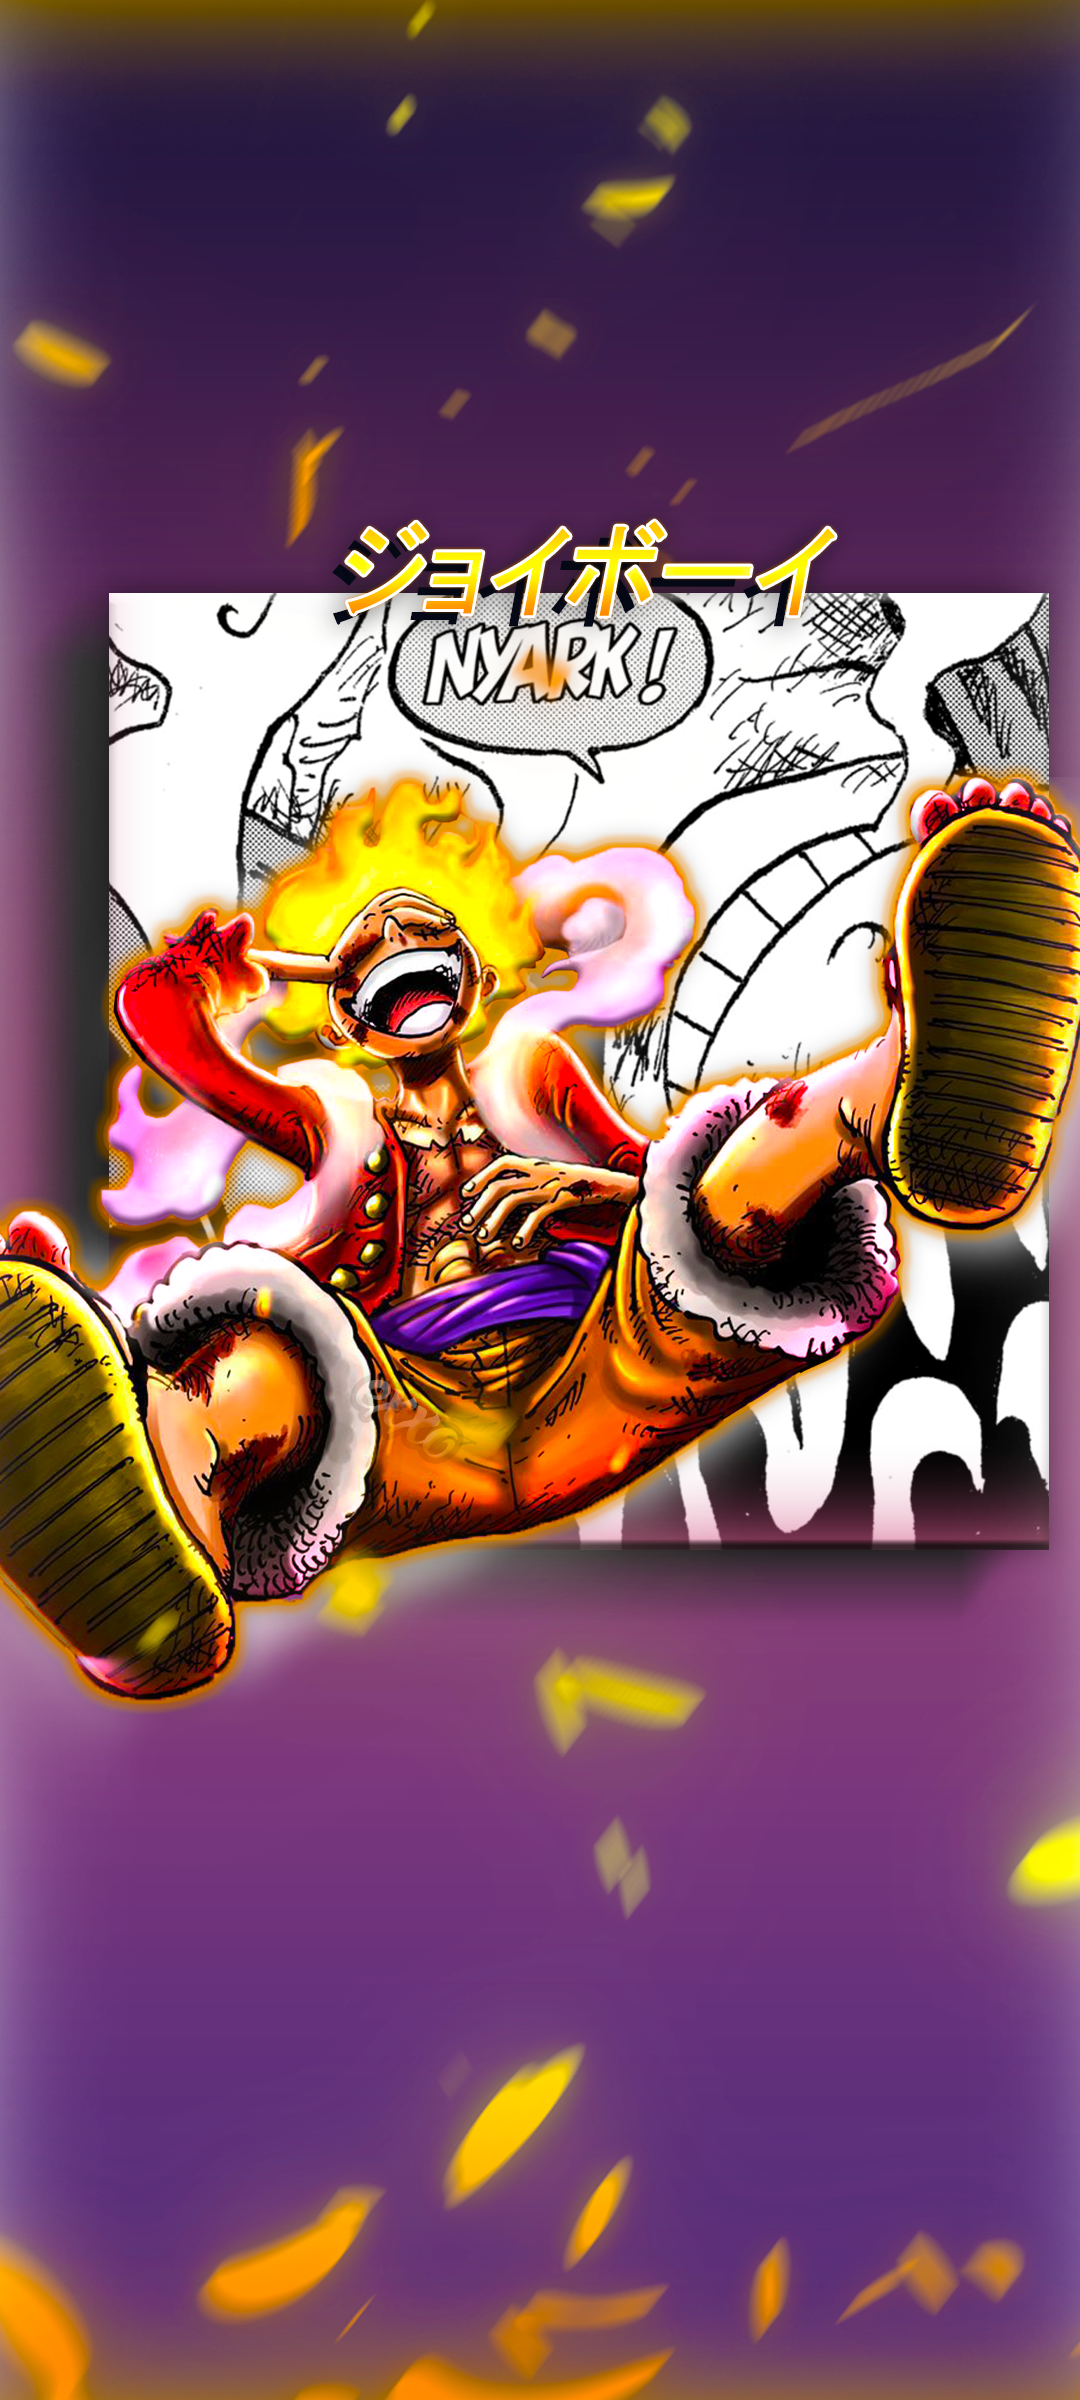 Monkey D. Luffy Gear 5: Luffy, nhân vật chính với khả năng biến hình kỳ diệu, đã đạt đến một tầm cao mới trong Gear